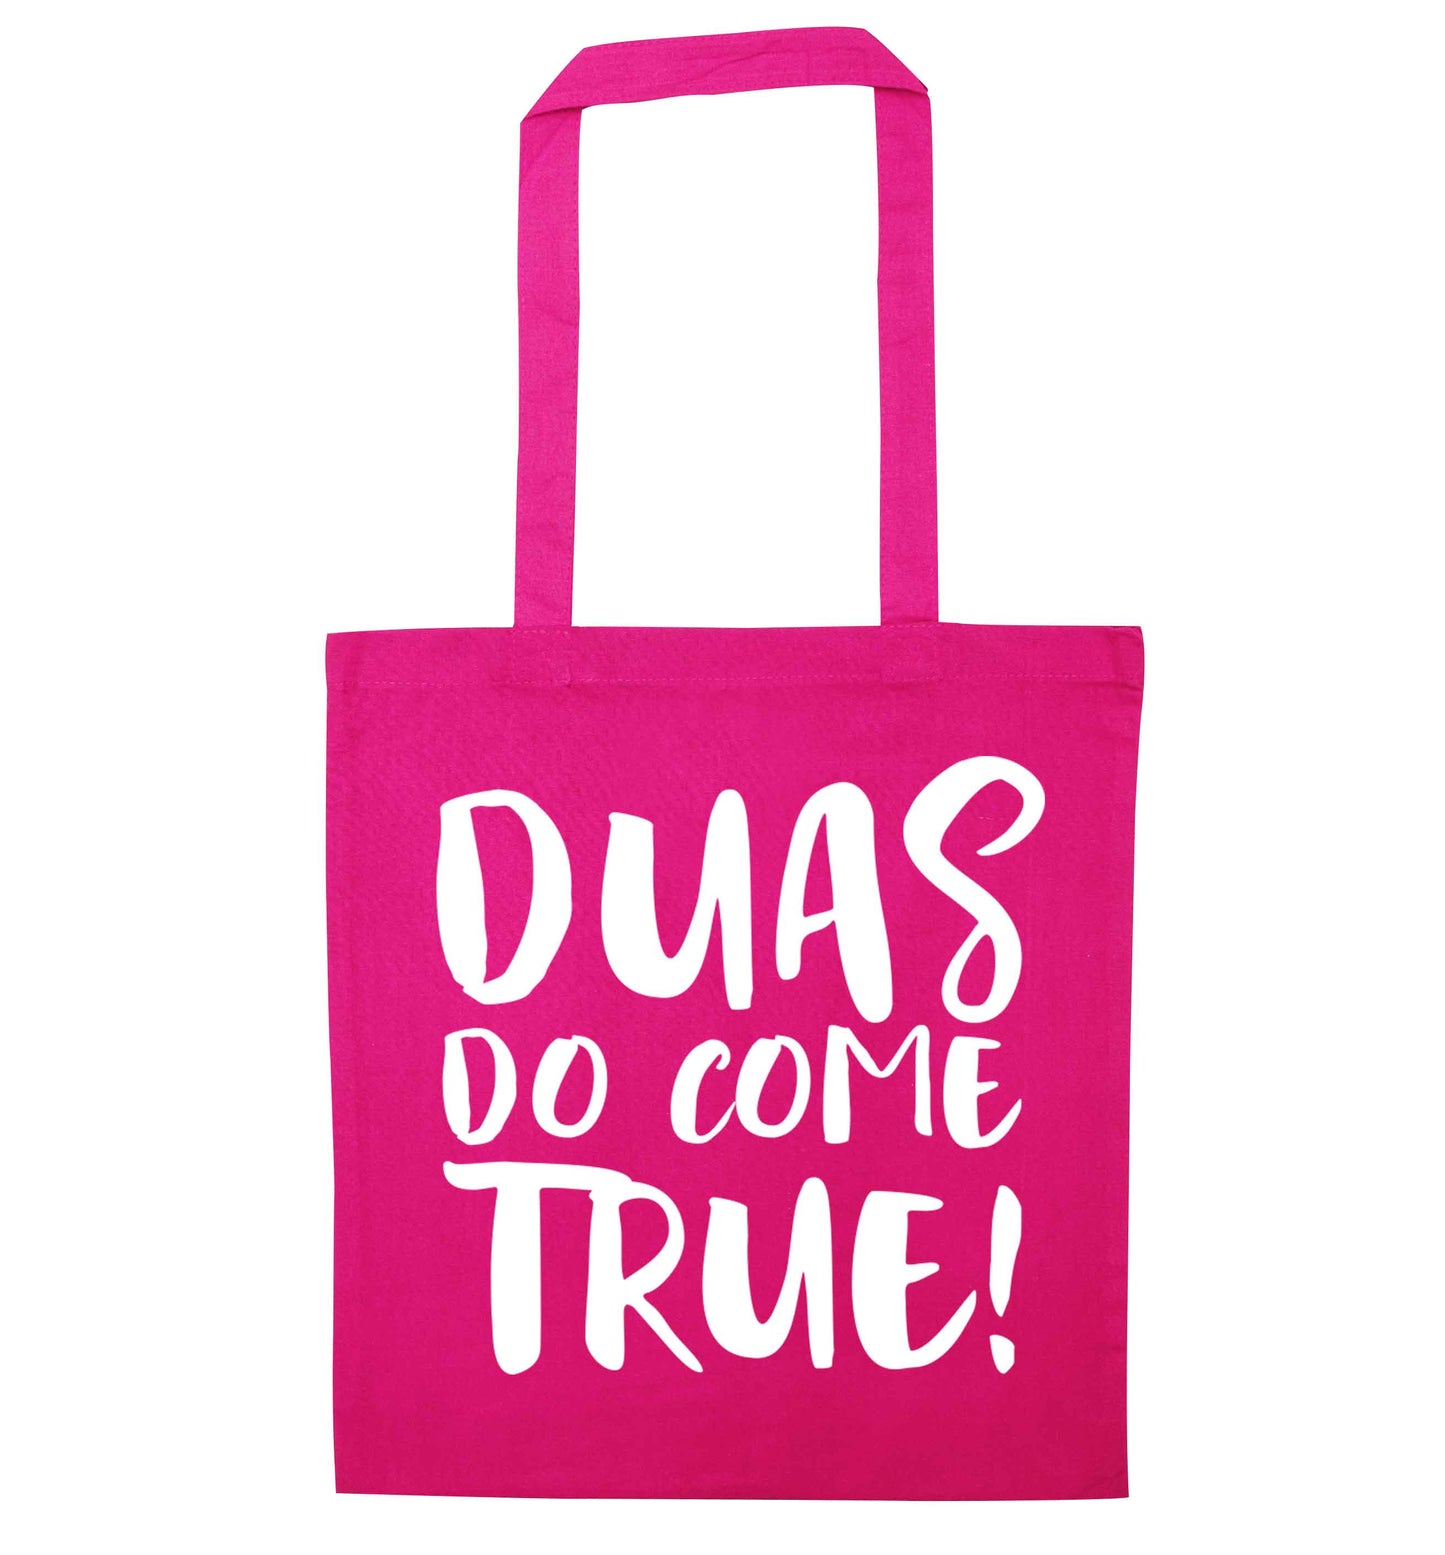 Duas do come true pink tote bag